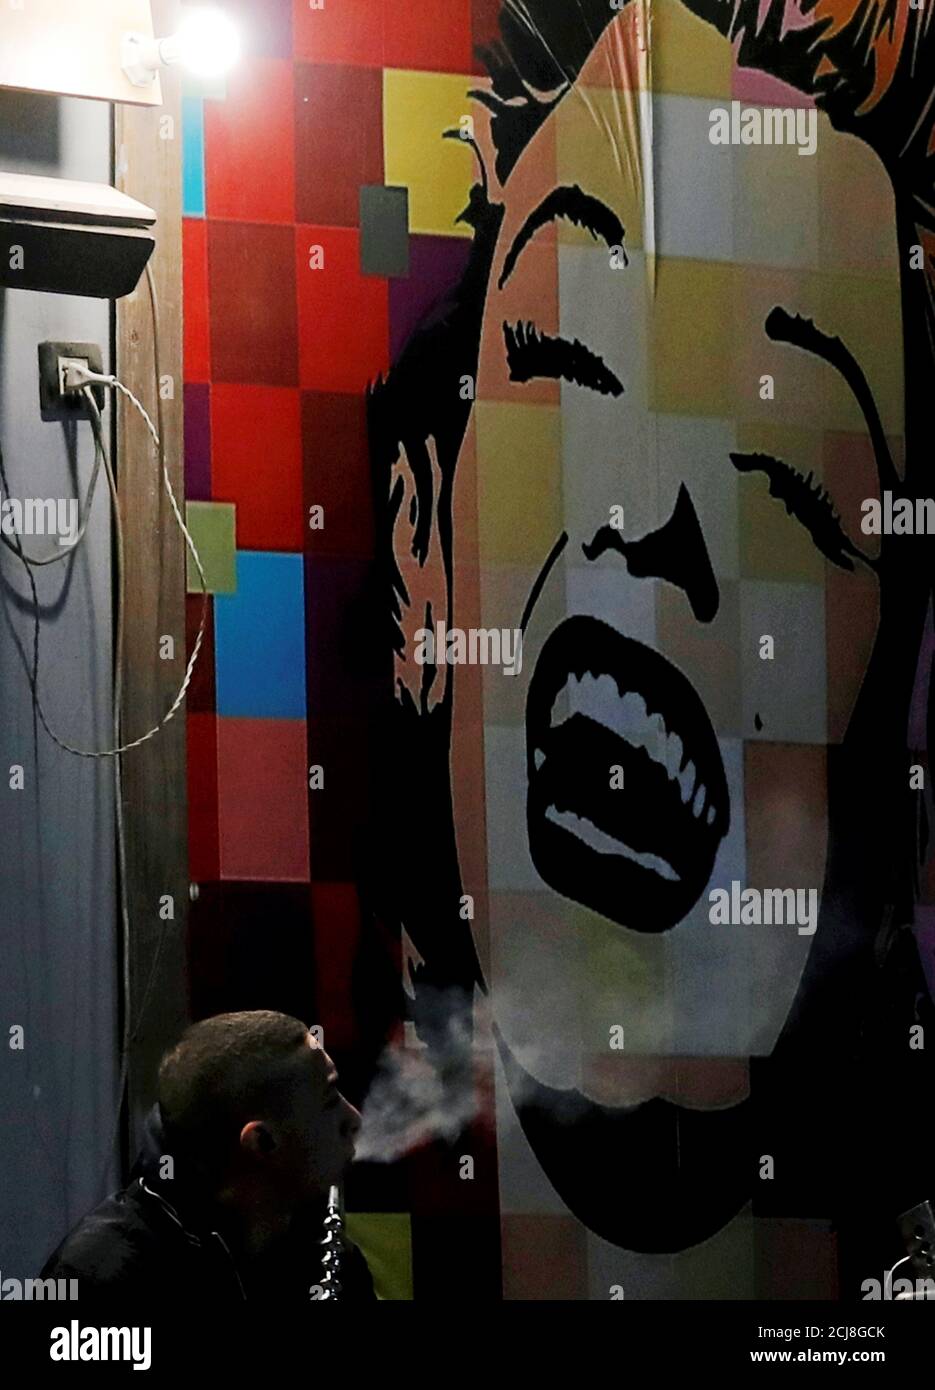 A man smokes shisha near a Marilyn Monroe image at El Fishawi Cafe in Cairo, Egypt December 23, 2018. REUTERS/Amr Abdallah Dalsh Stock Photo